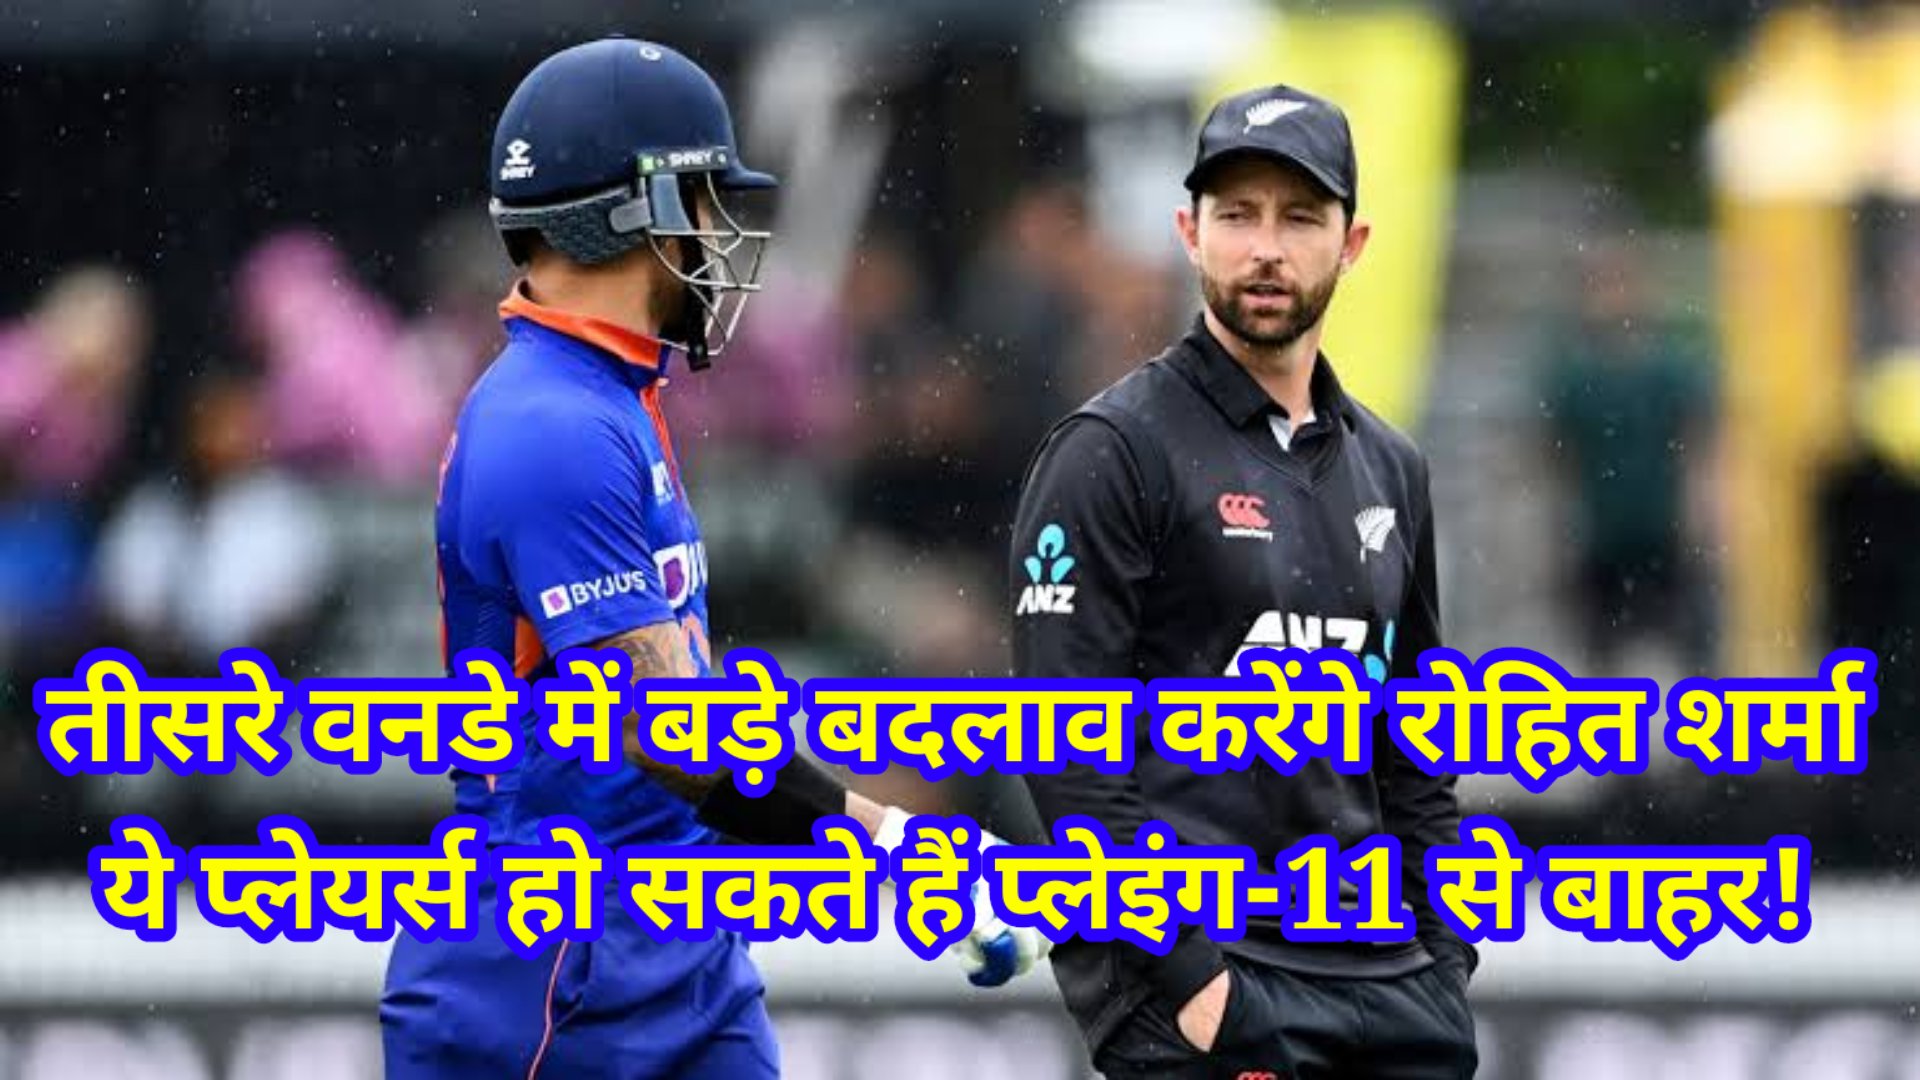 Ind Vs Nz 3rd ODI big changes in Indian team - तीसरे वनडे में बड़े बदलाव करेंगे रोहित शर्मा, ये प्लेयर्स हो सकते हैं प्लेइंग-11 से बाहर!